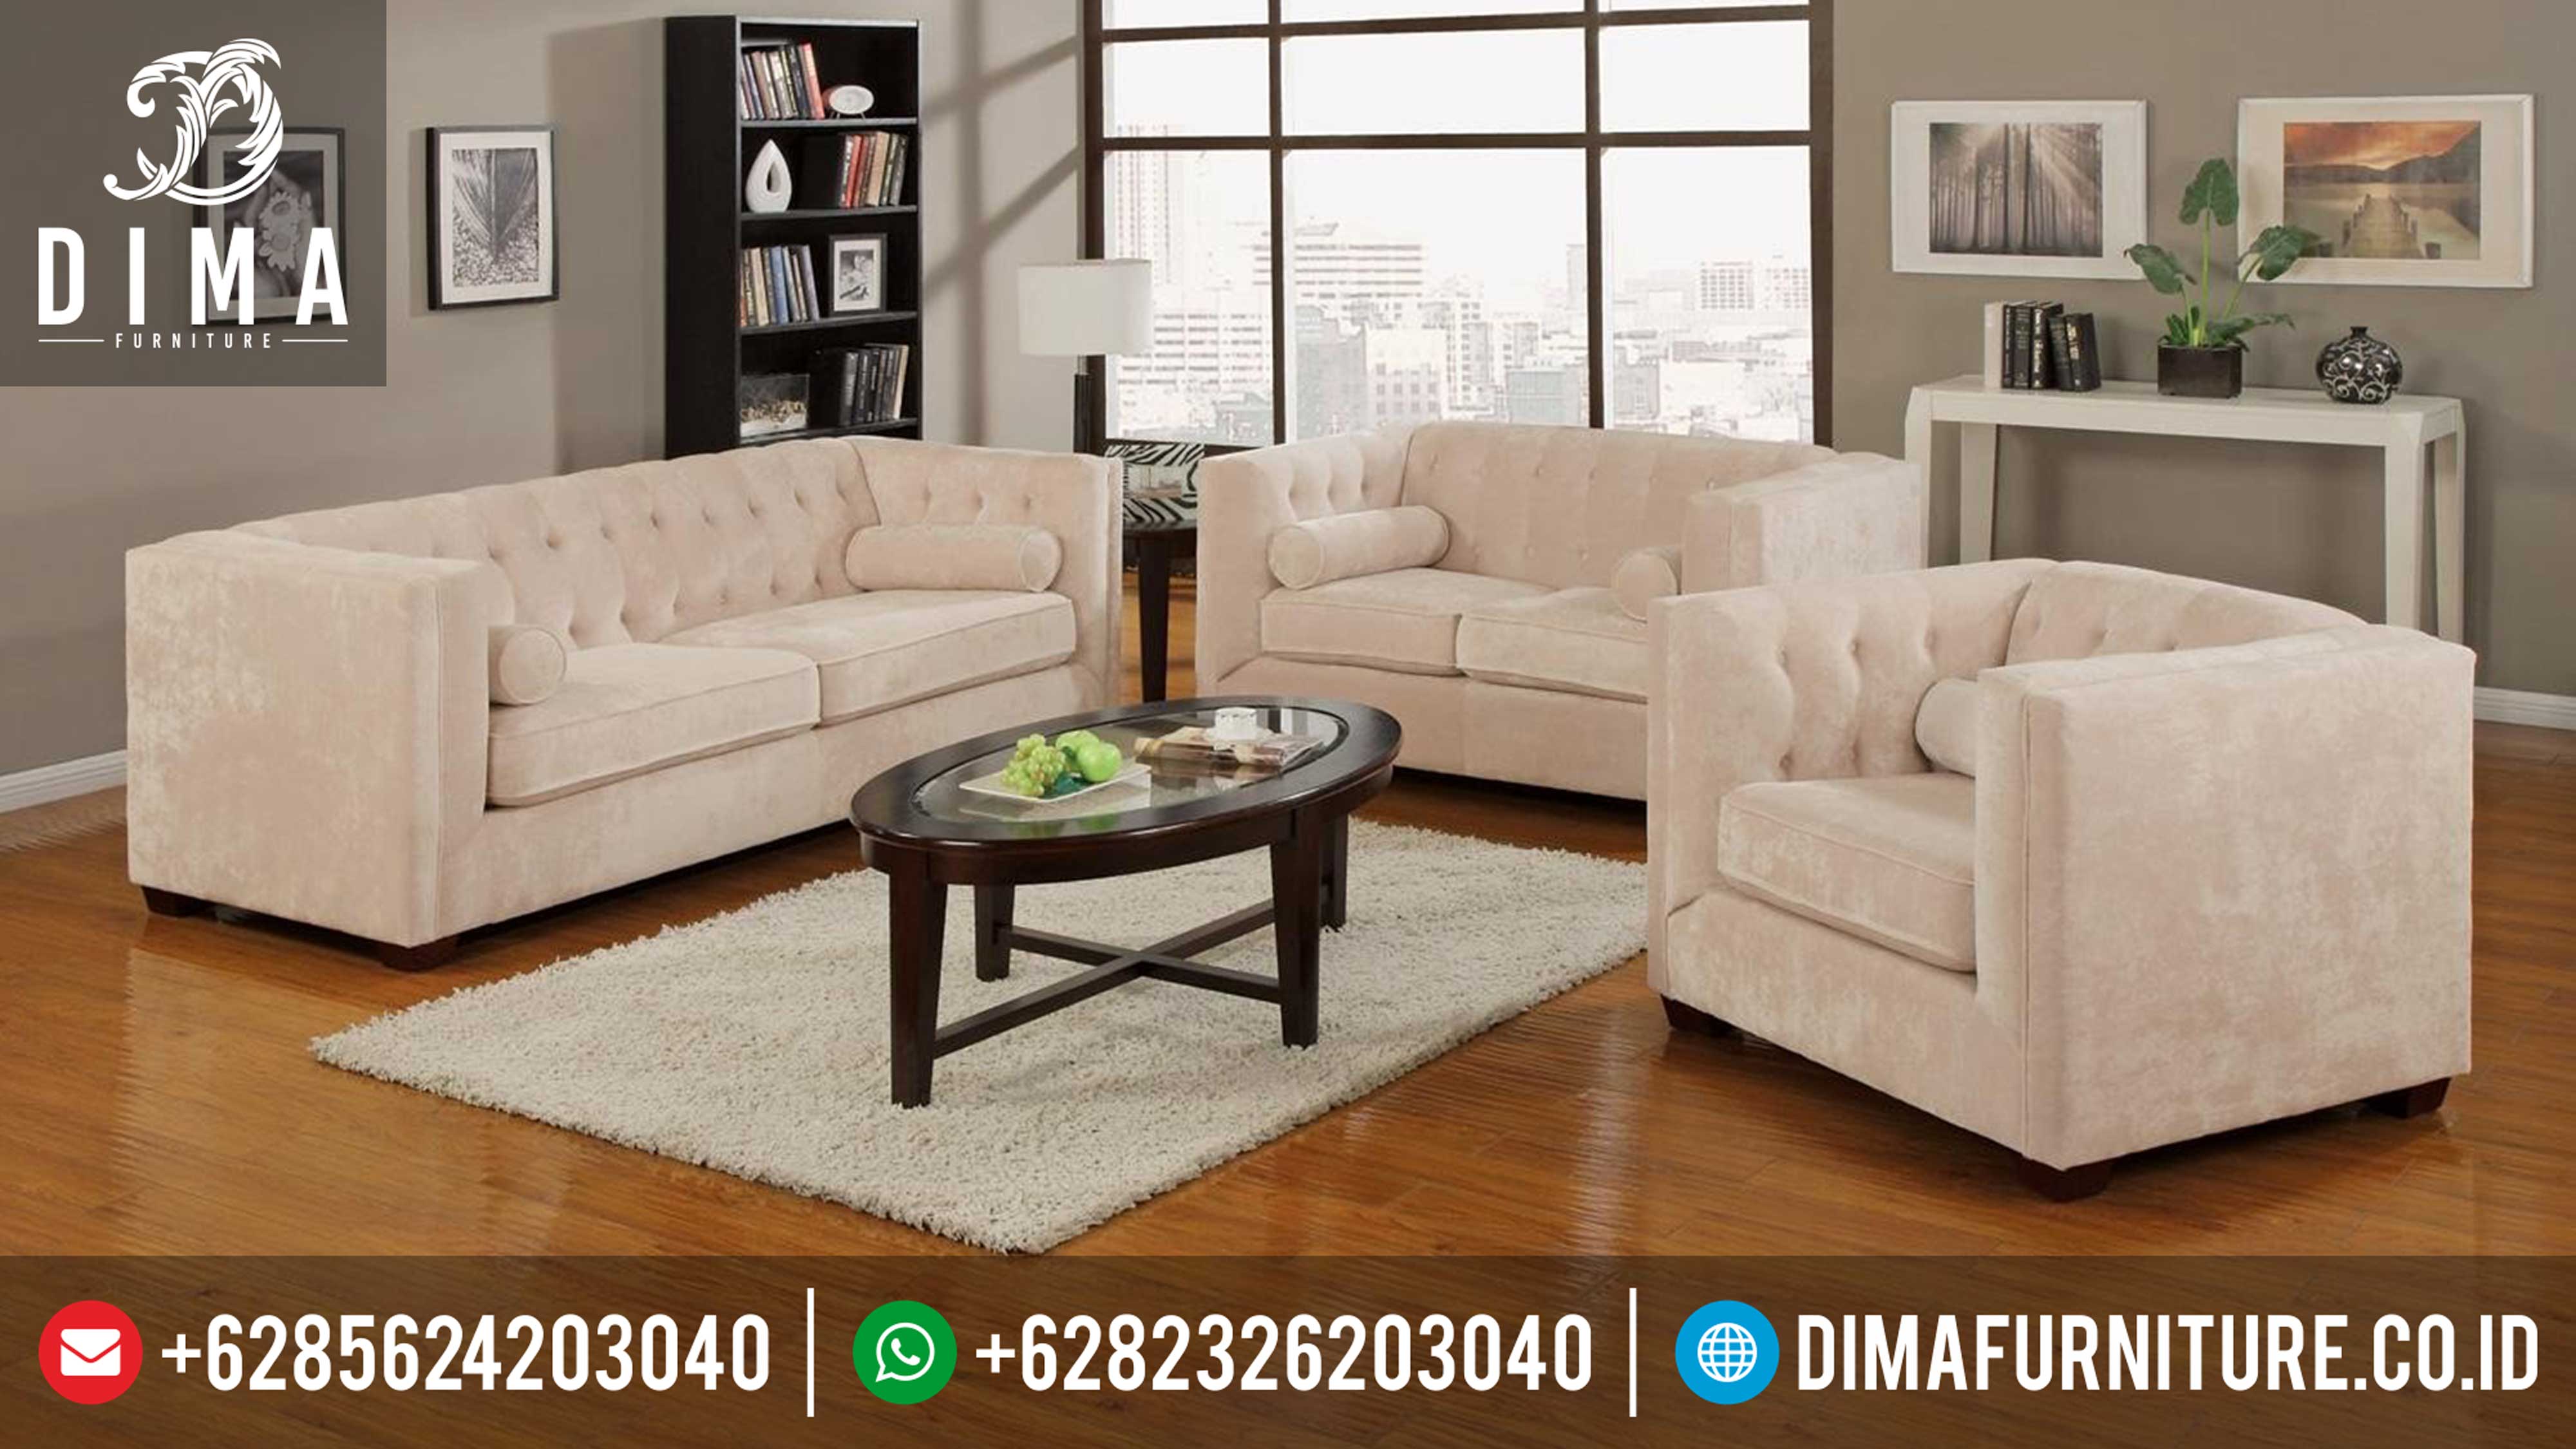 Sofa Bungkus Minimalis Jepara Terbaru Mewah DF 0313 Dima Furniture